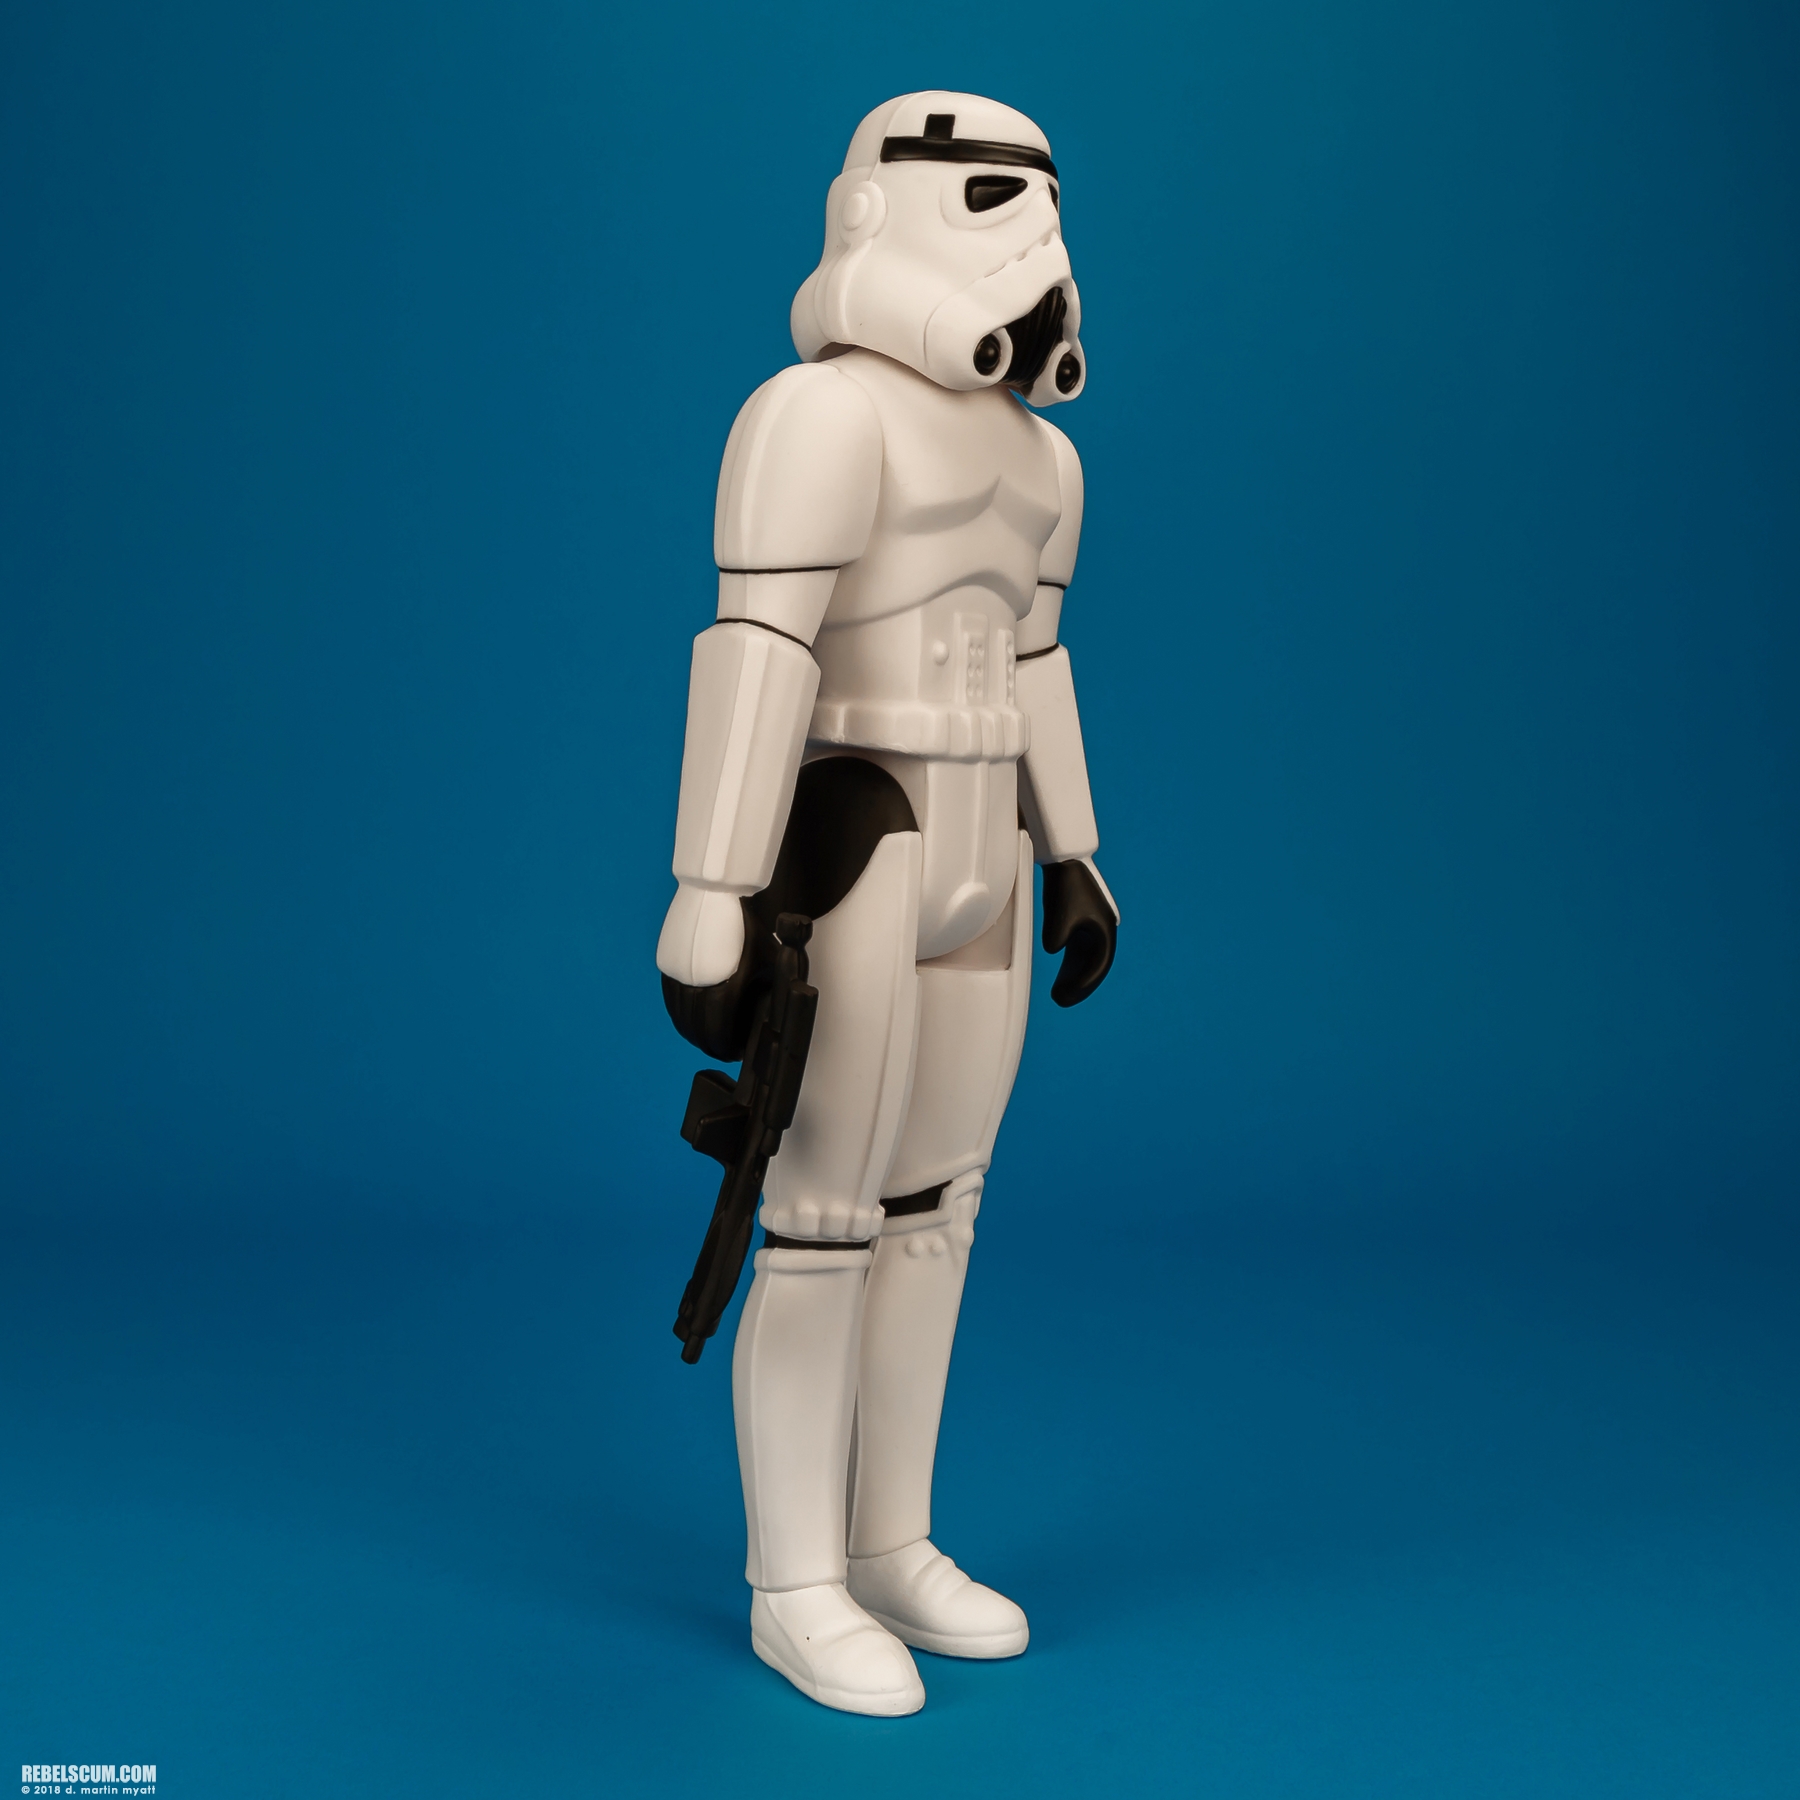 Luke-Skywalker-Stormtrooper-Disguise-Jumbo-Kenner-Gentle-Giant-006.jpg